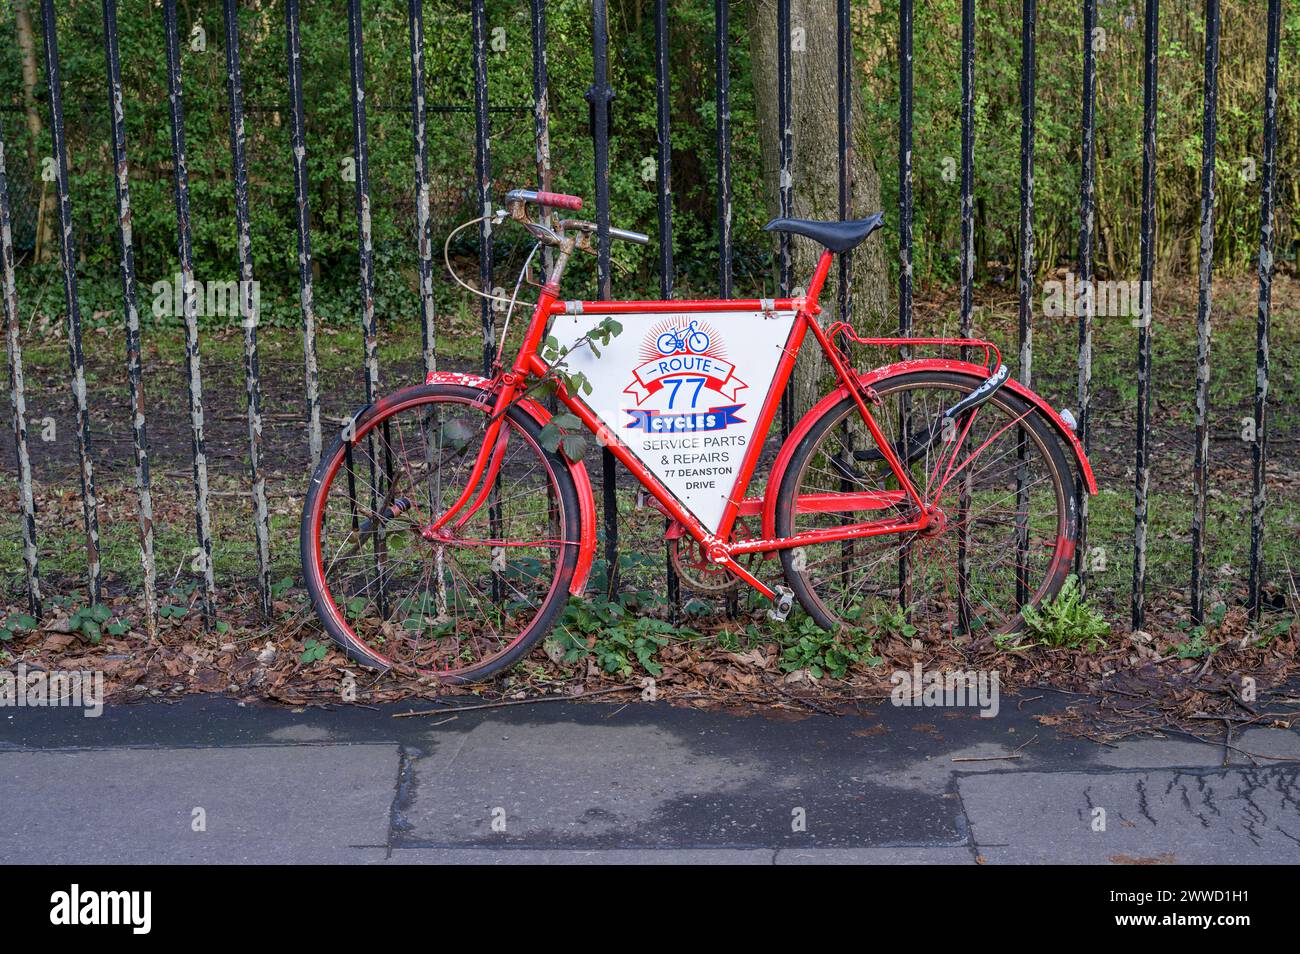 Un vieux vélo rouge faisant la publicité d'un atelier de réparation de vélos, Glasgow, Écosse, Royaume-Uni, Europe Banque D'Images